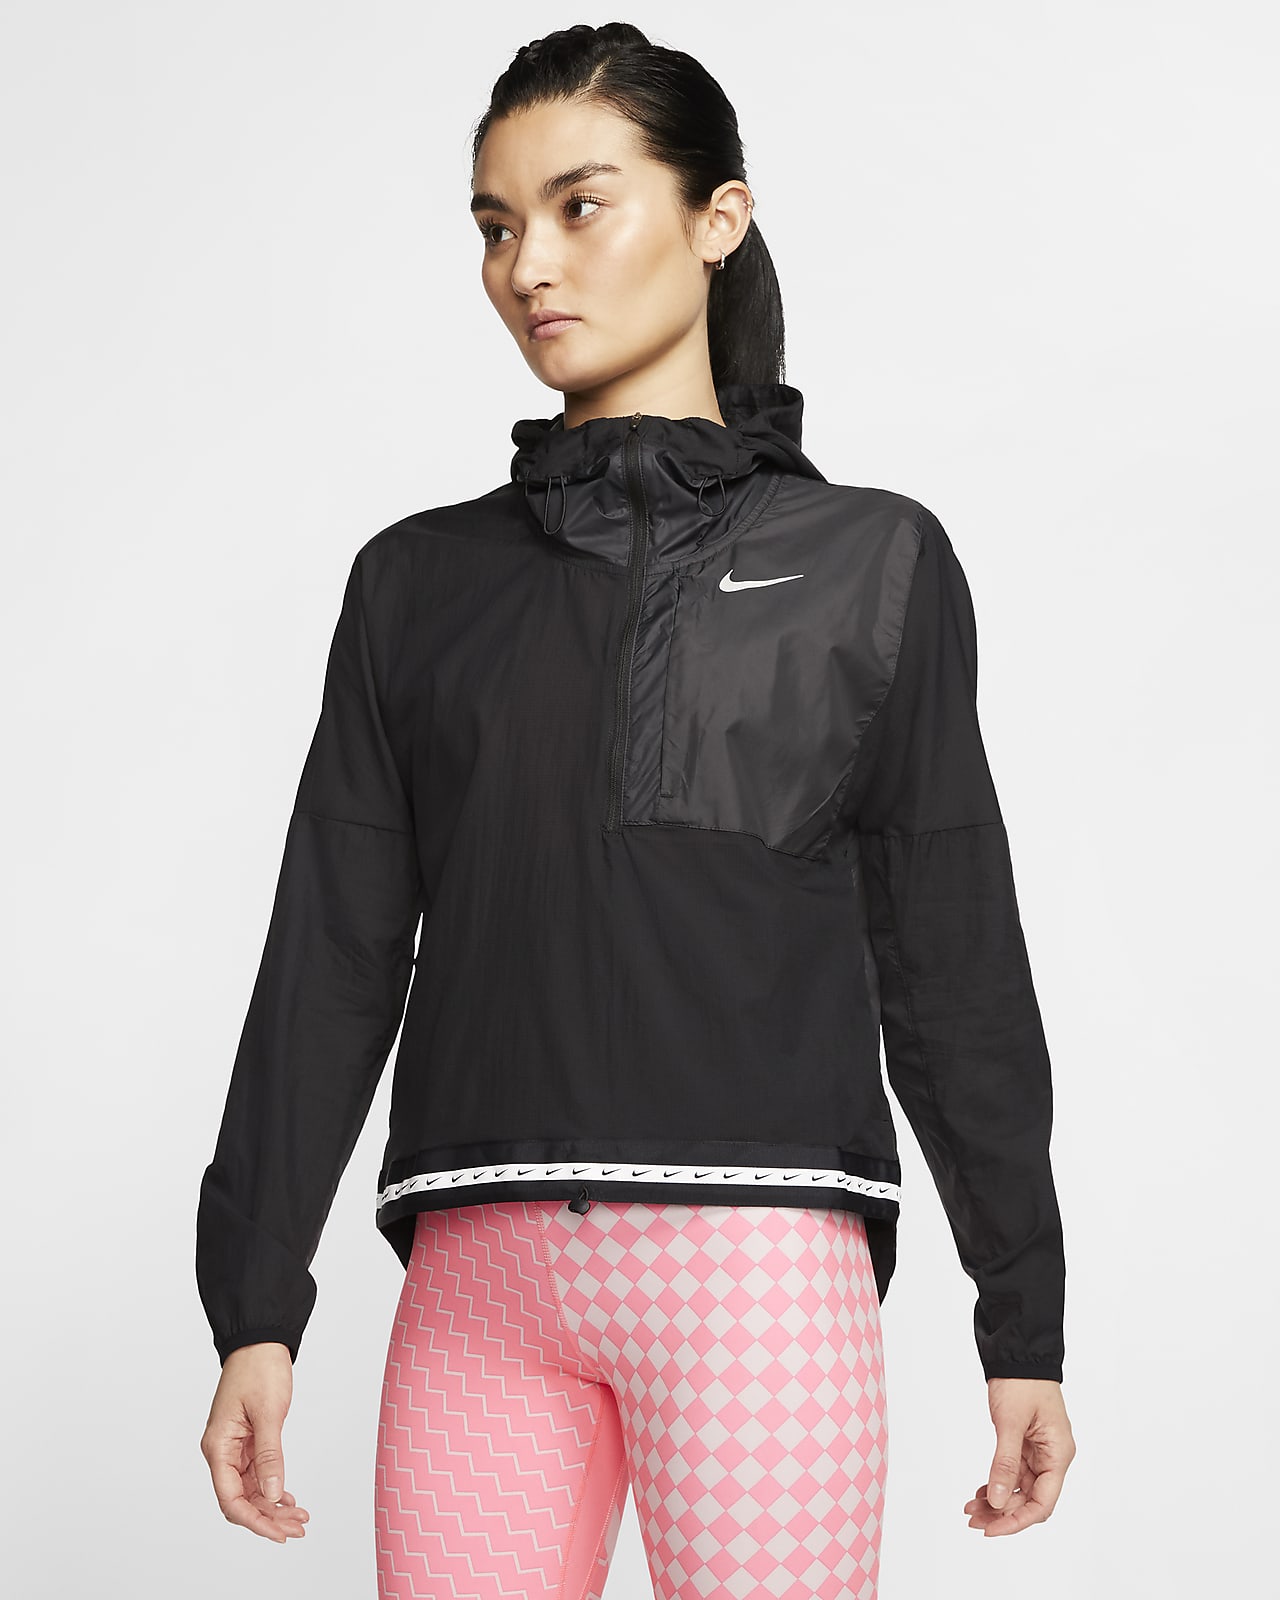 Nike Women's Lightweight Running Jacket